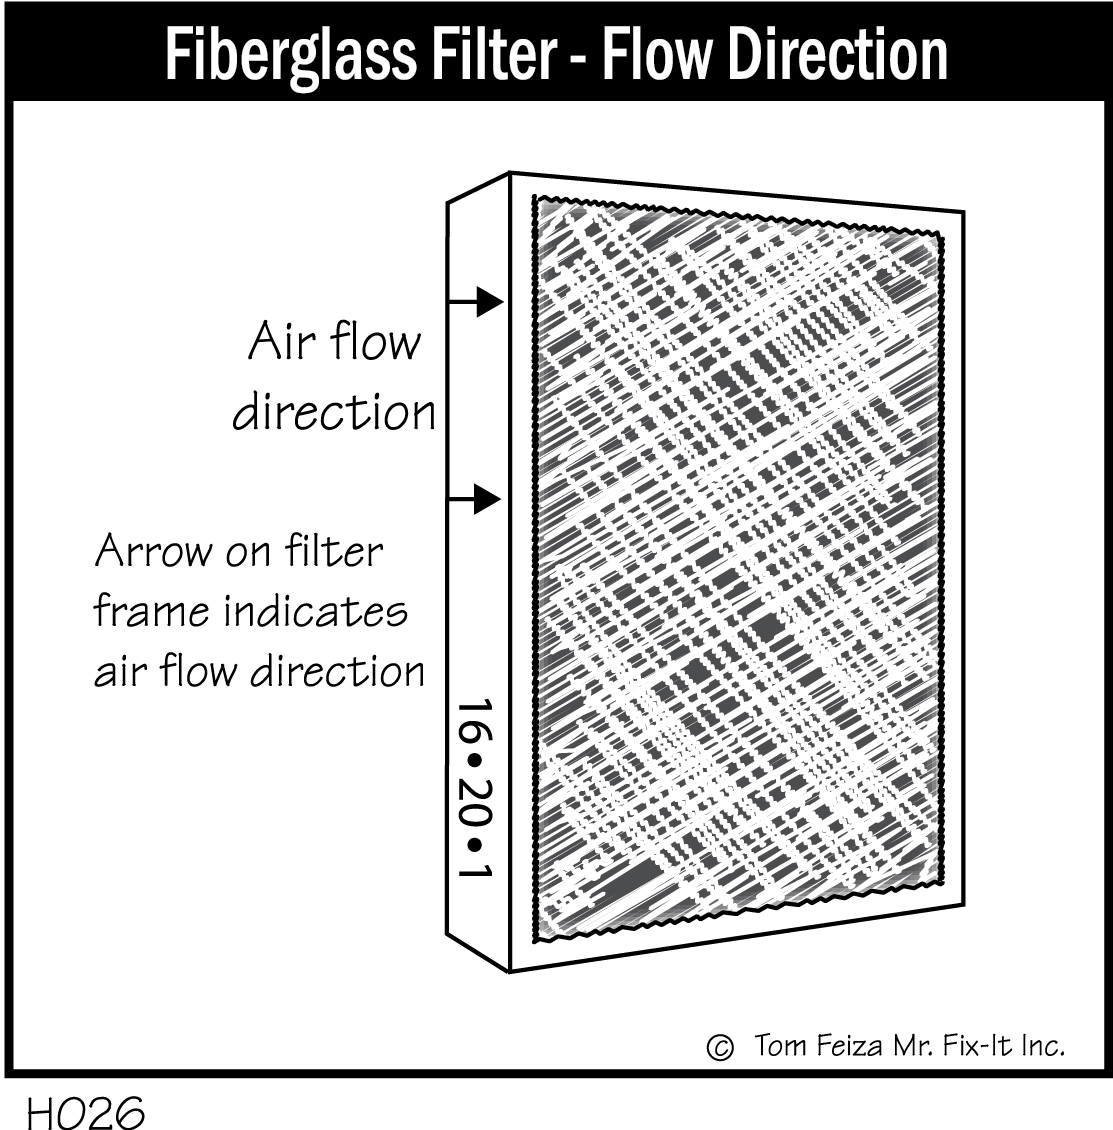 H026 - Fiberglass Filter - Flow Direction